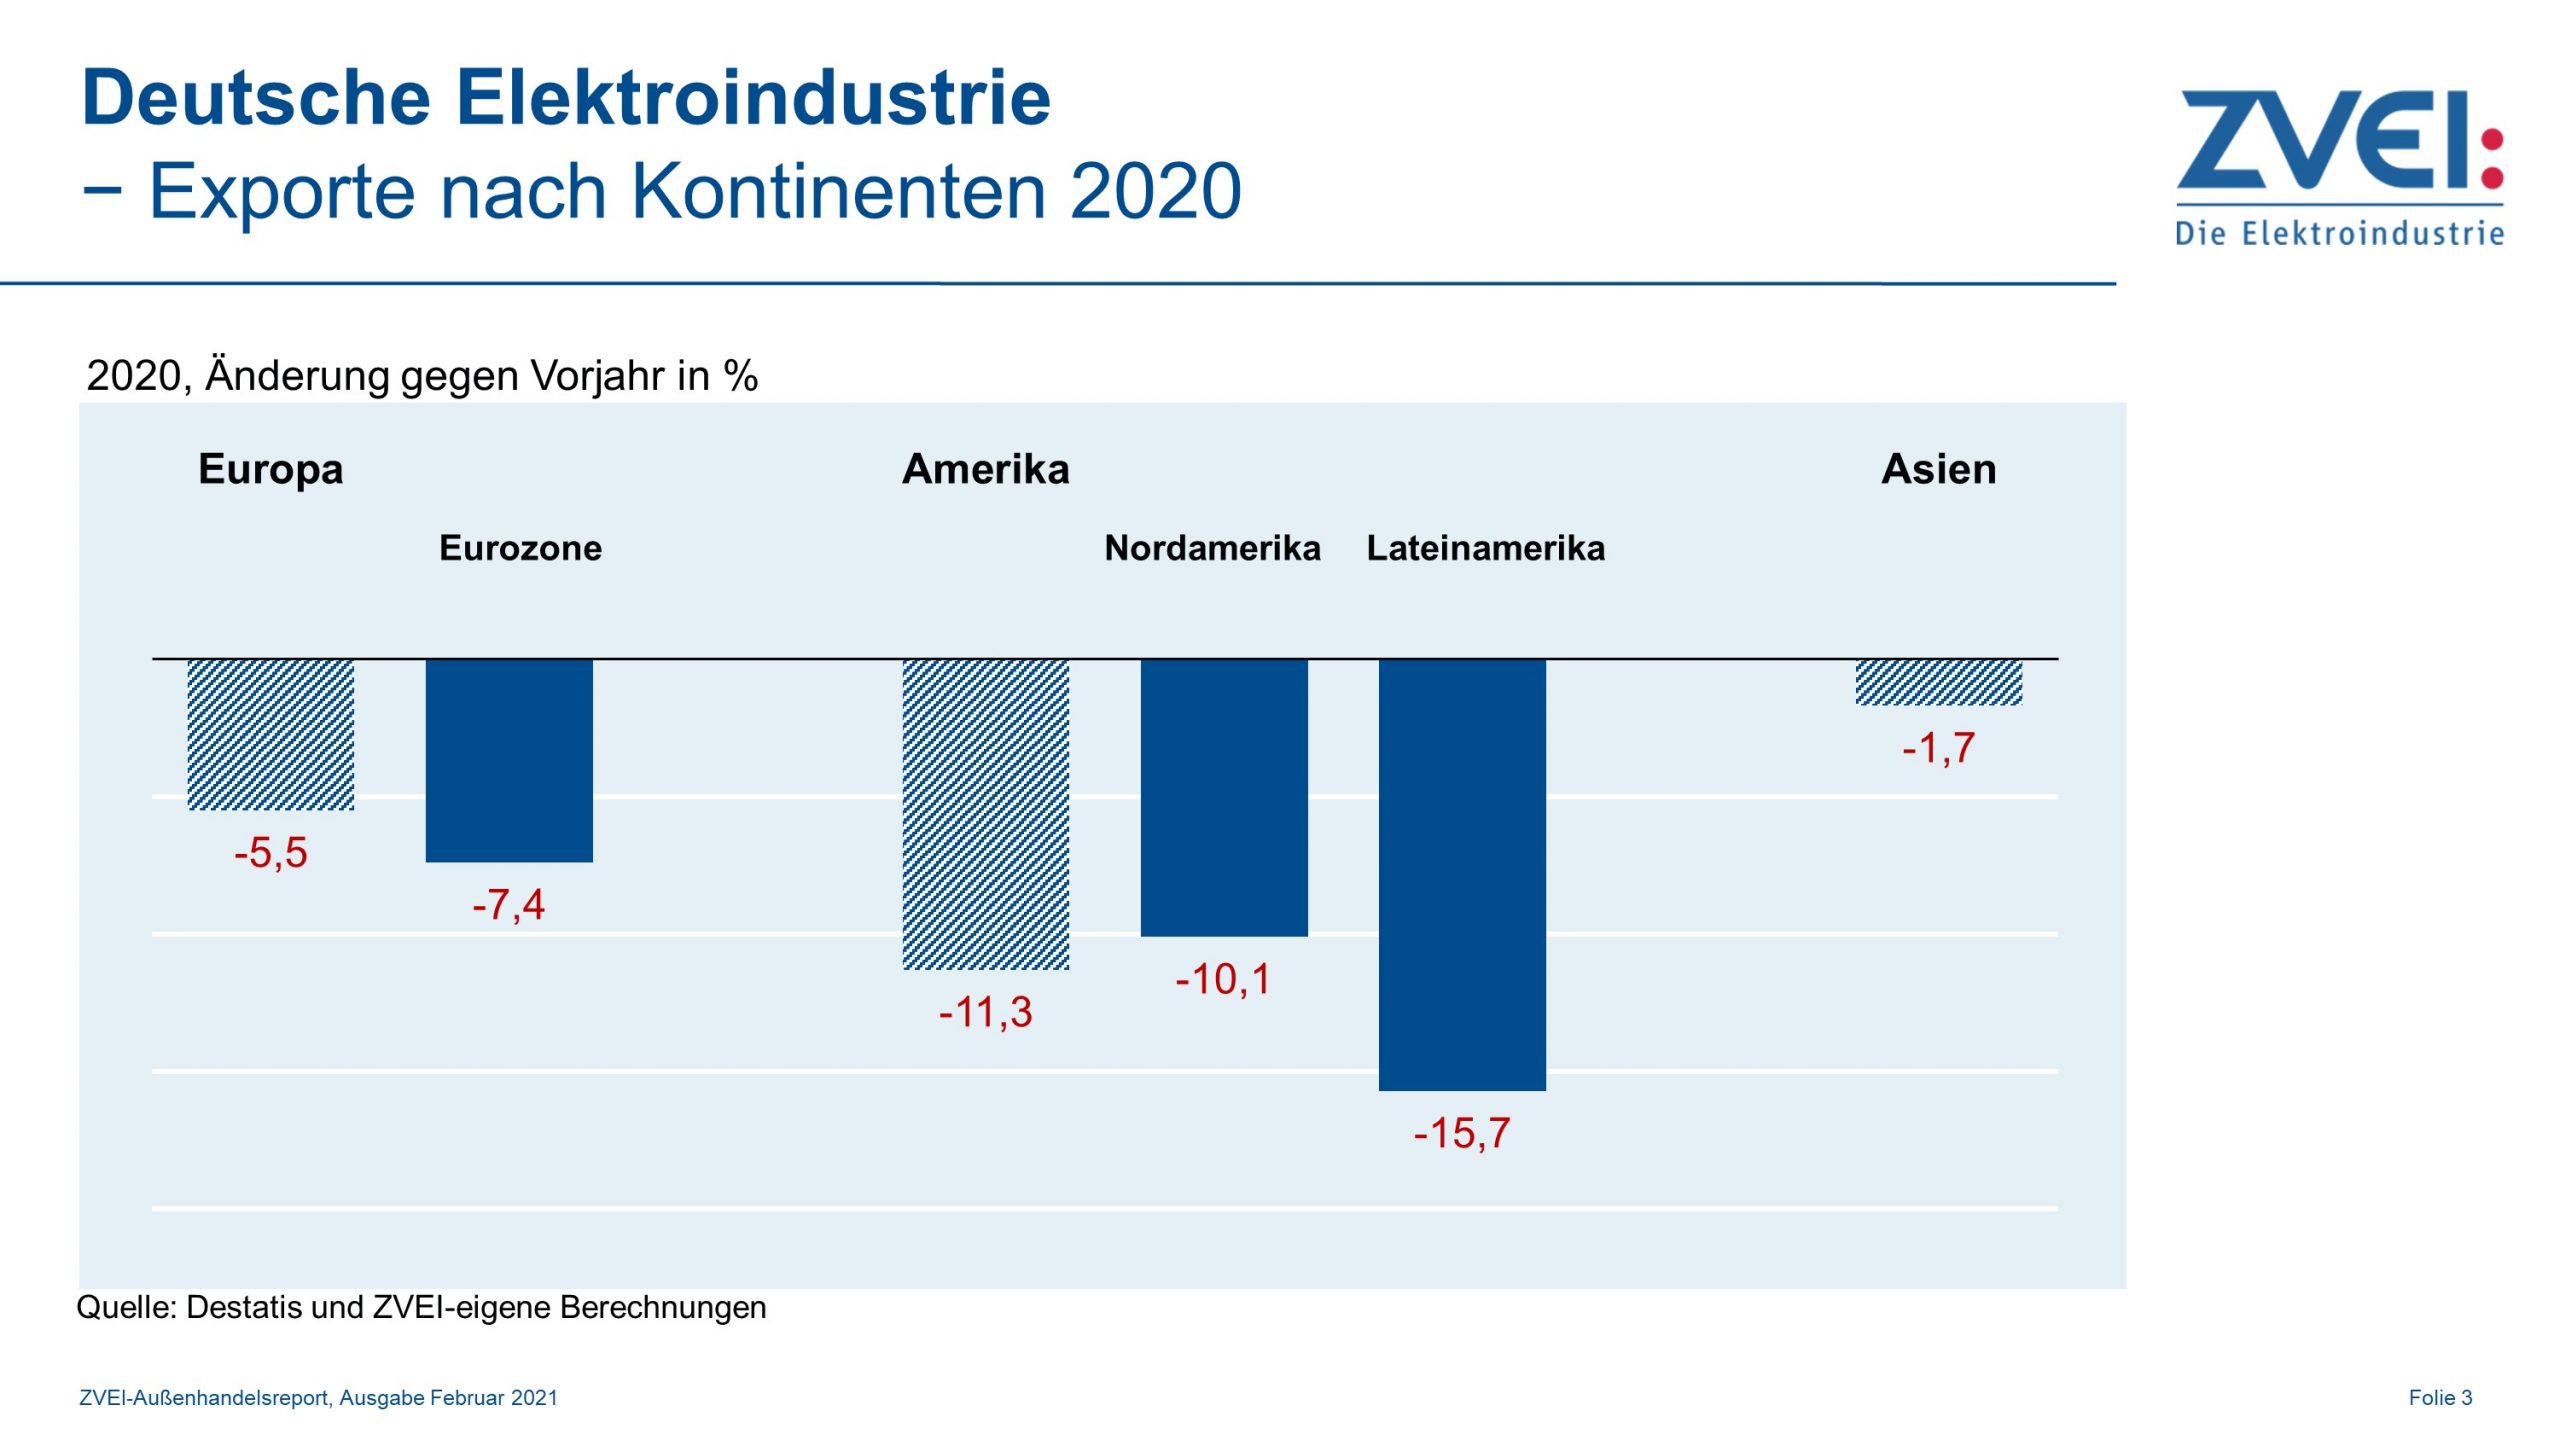 Deutsche Elektroindustrie: Exporte nach Kontinenten 2020